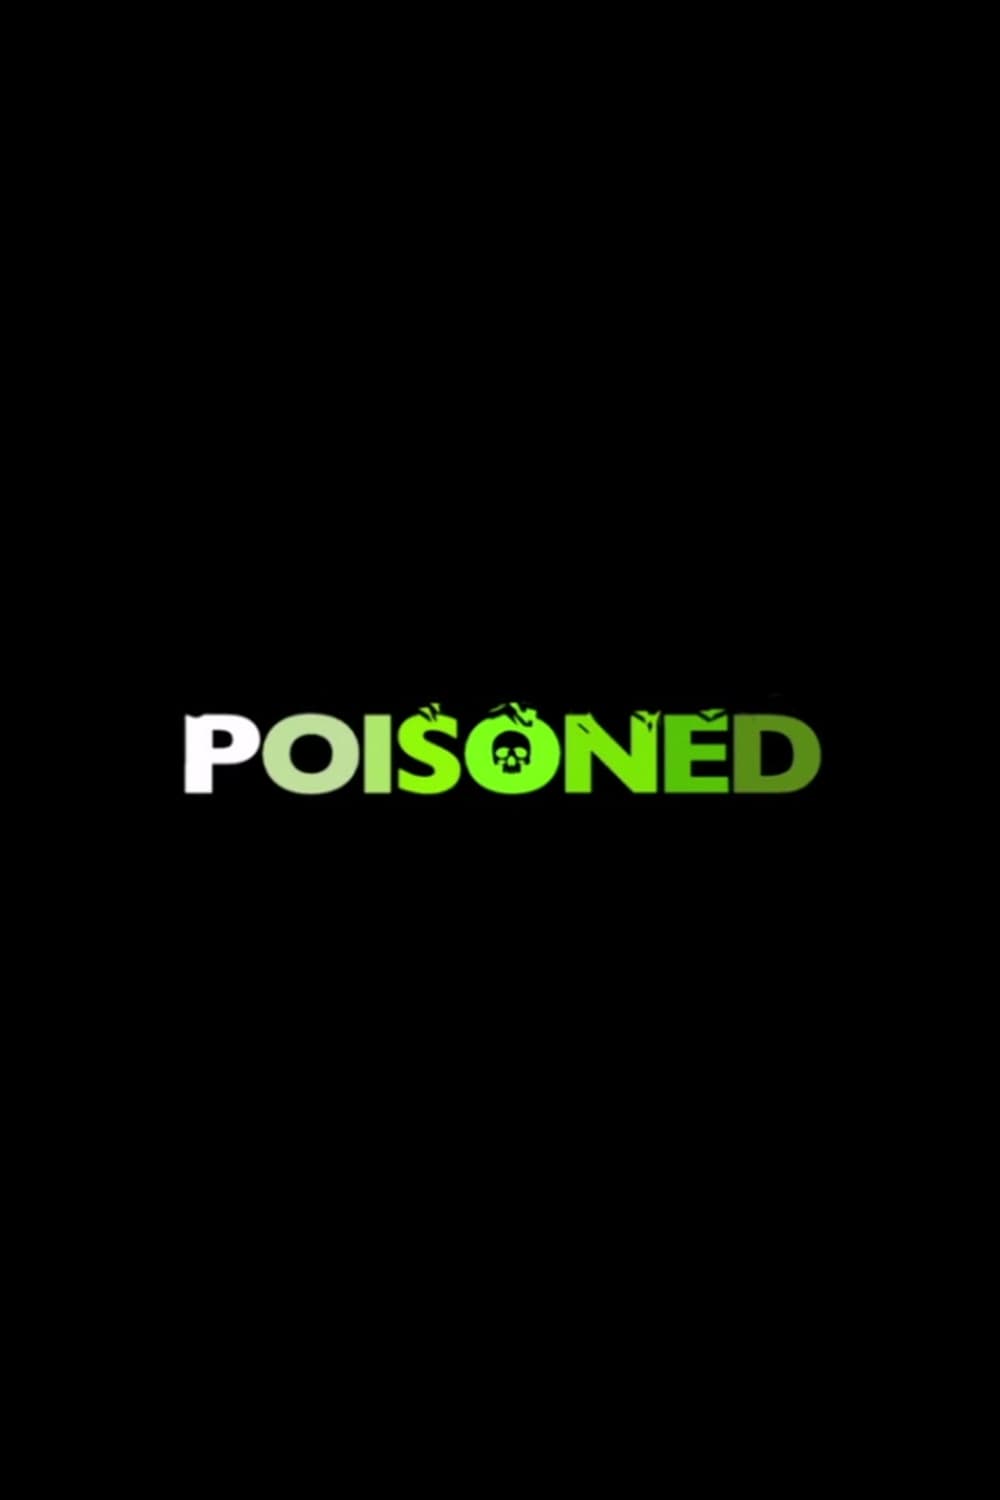 Poisoned film